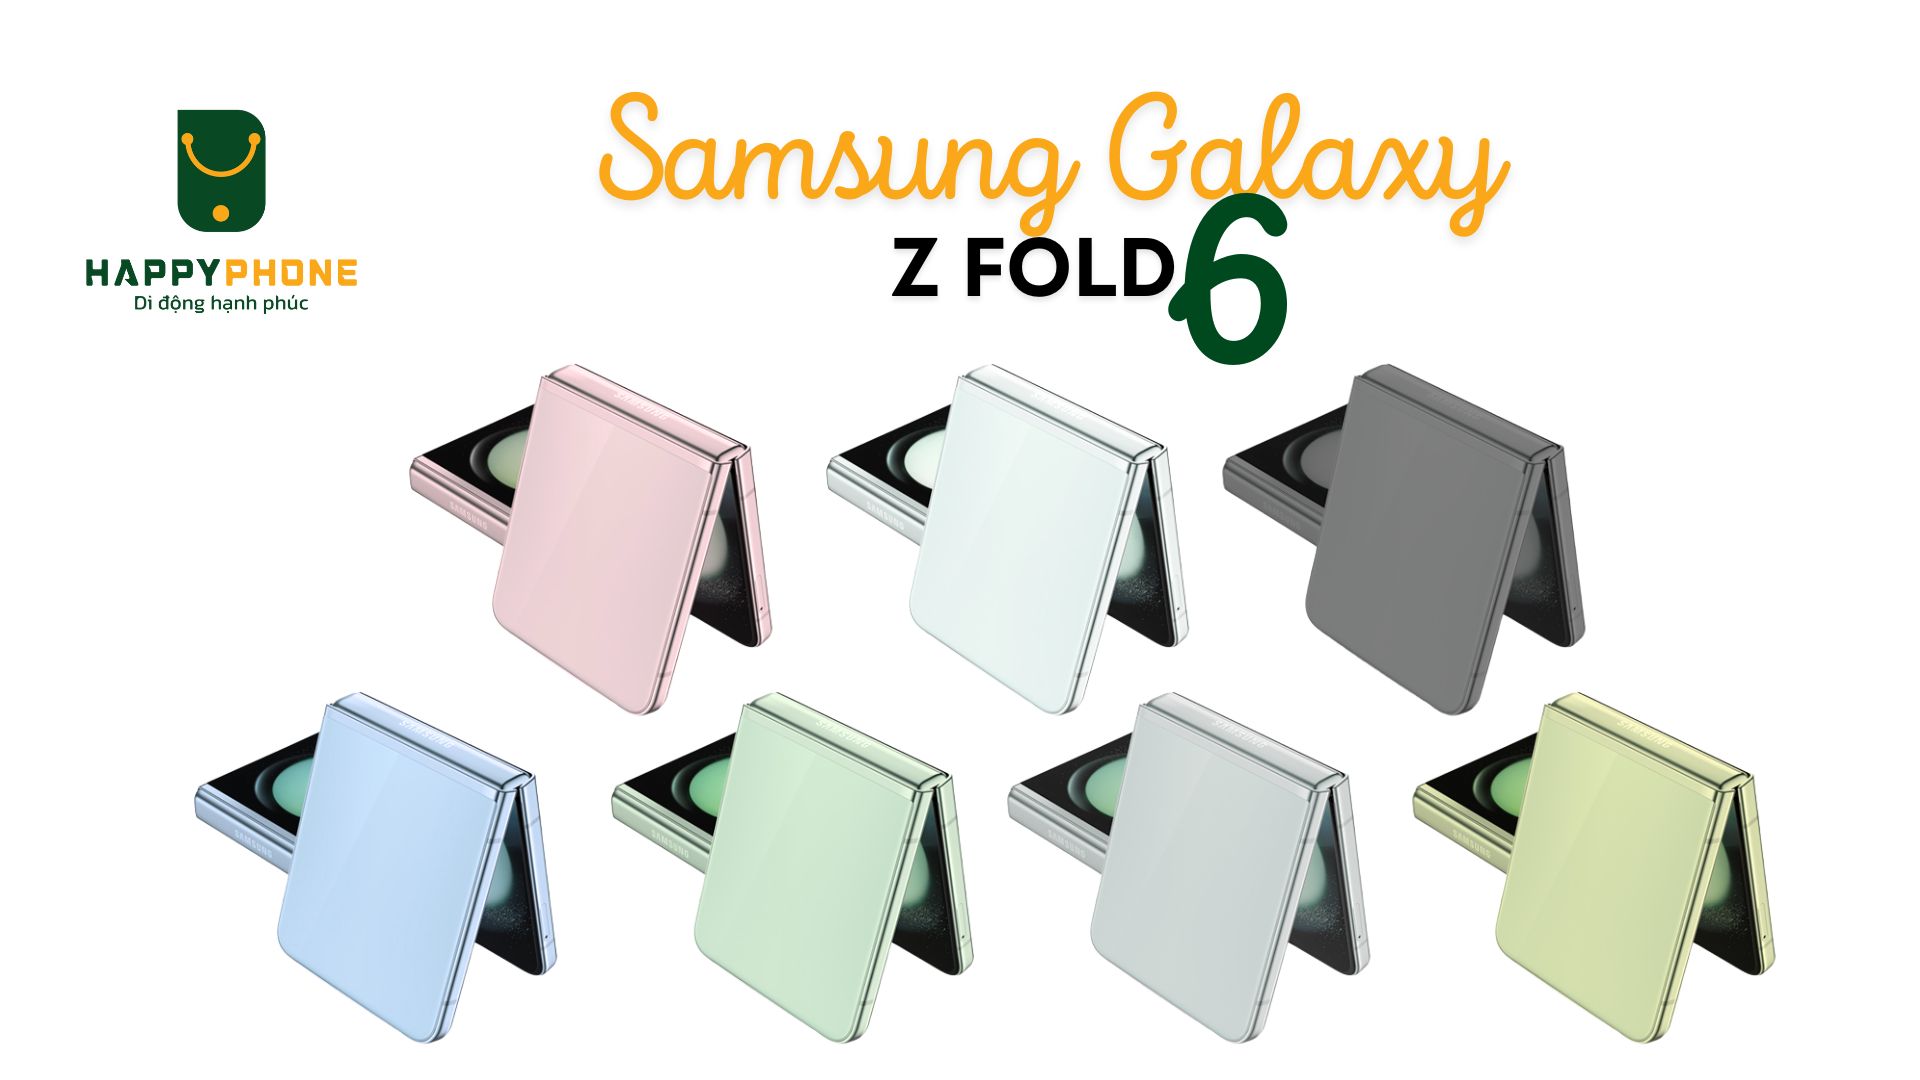 Samsung Galaxy Z Flip 6 có 7 tùy chọn màu sắc khác nhau